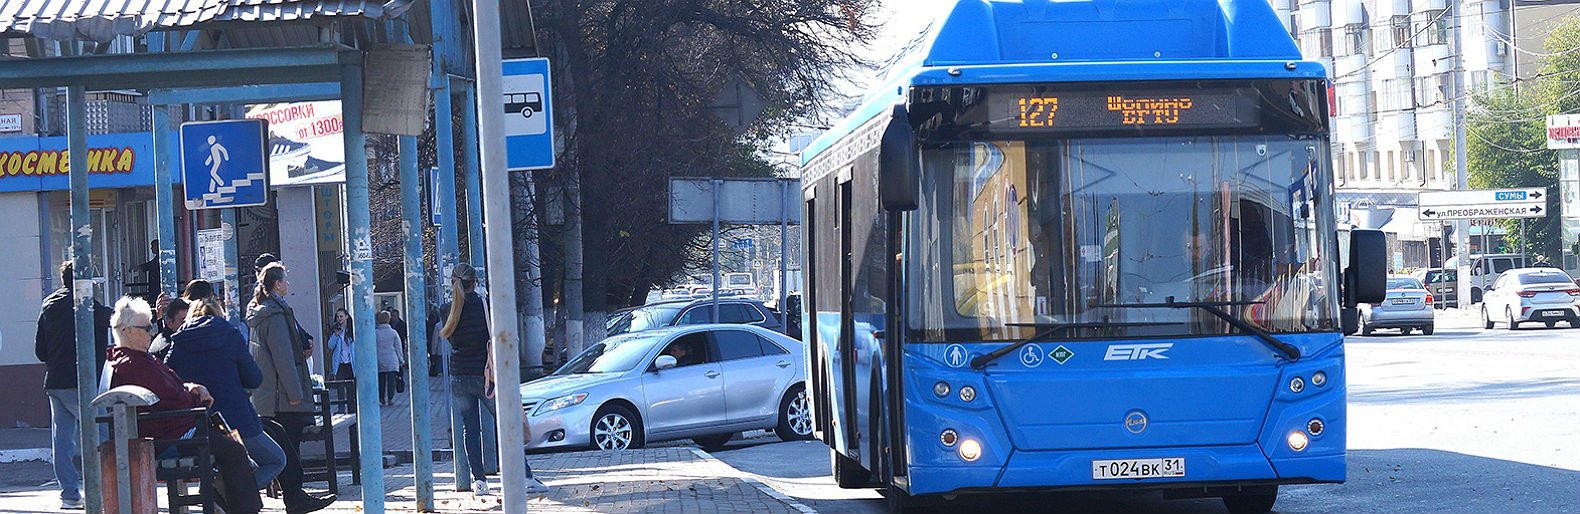 На будущий год в Белгороде запланирован ремонт всех подземных переходов по Богданке